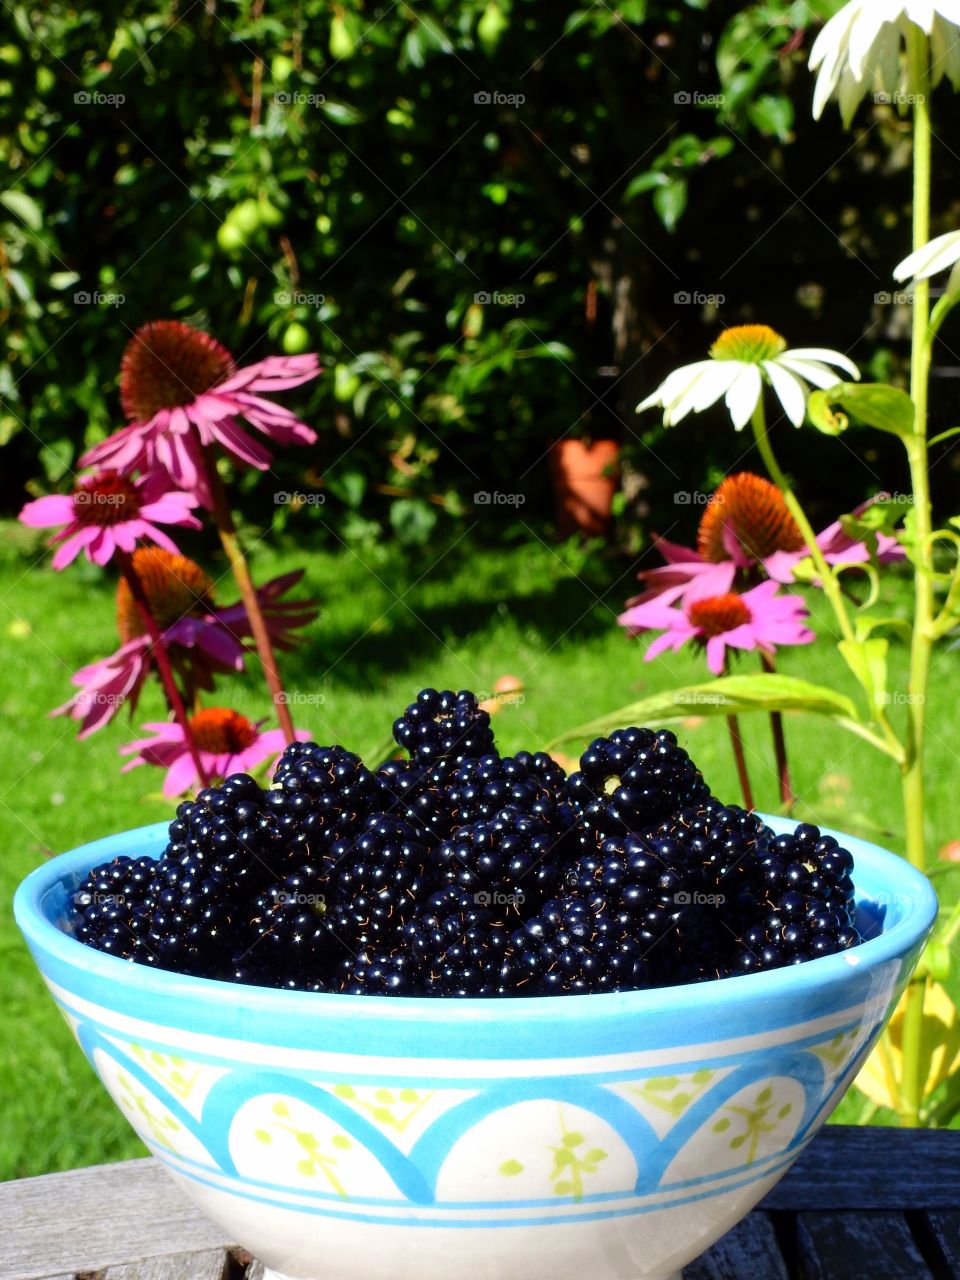 My blackberries